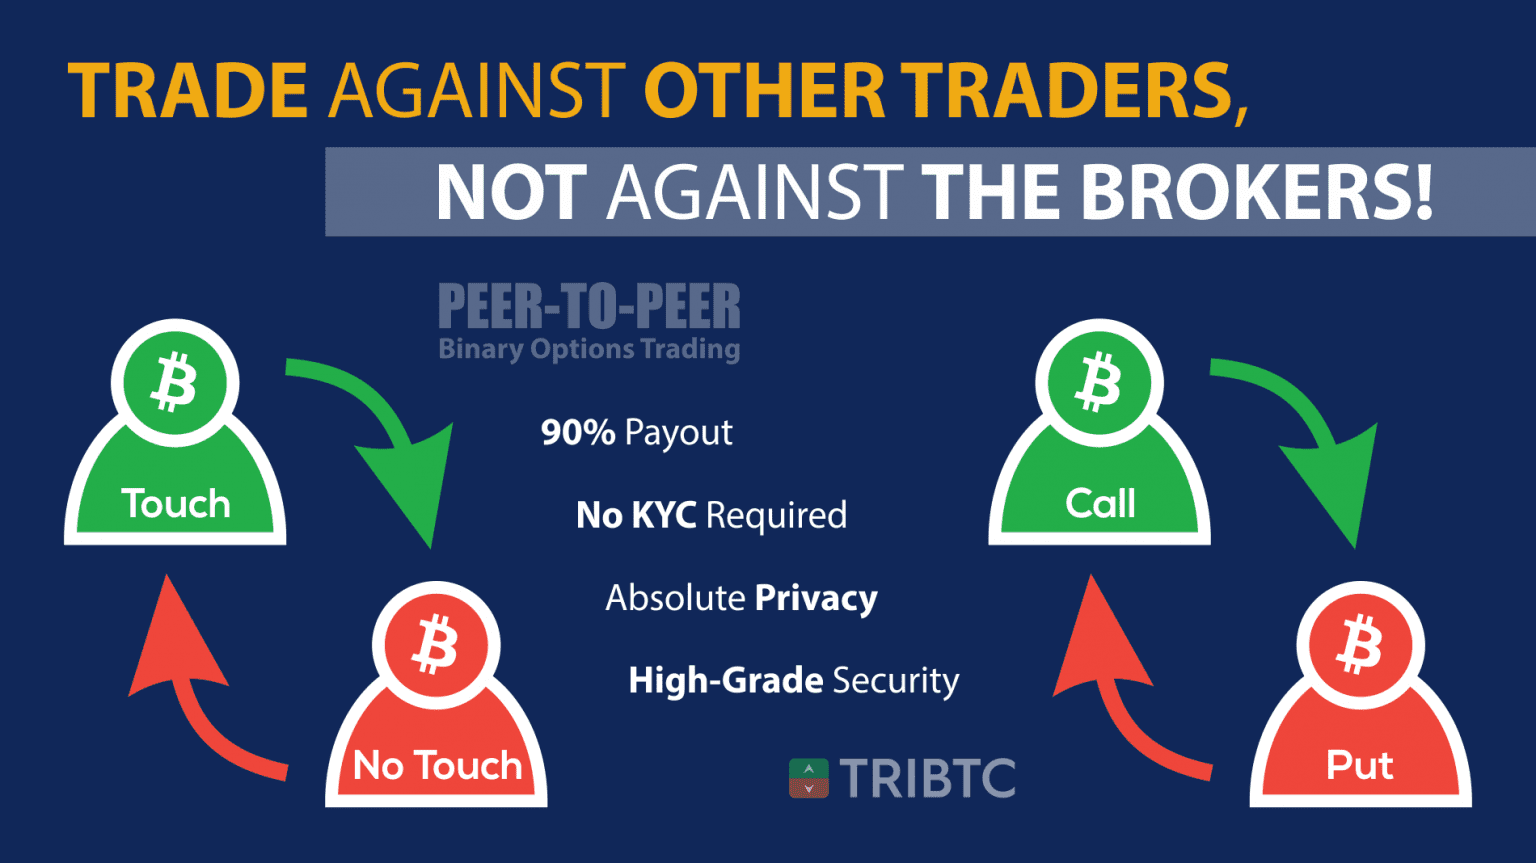 TRIBTC Broker Review - Crypto Options Trading | BTC Crypto ...